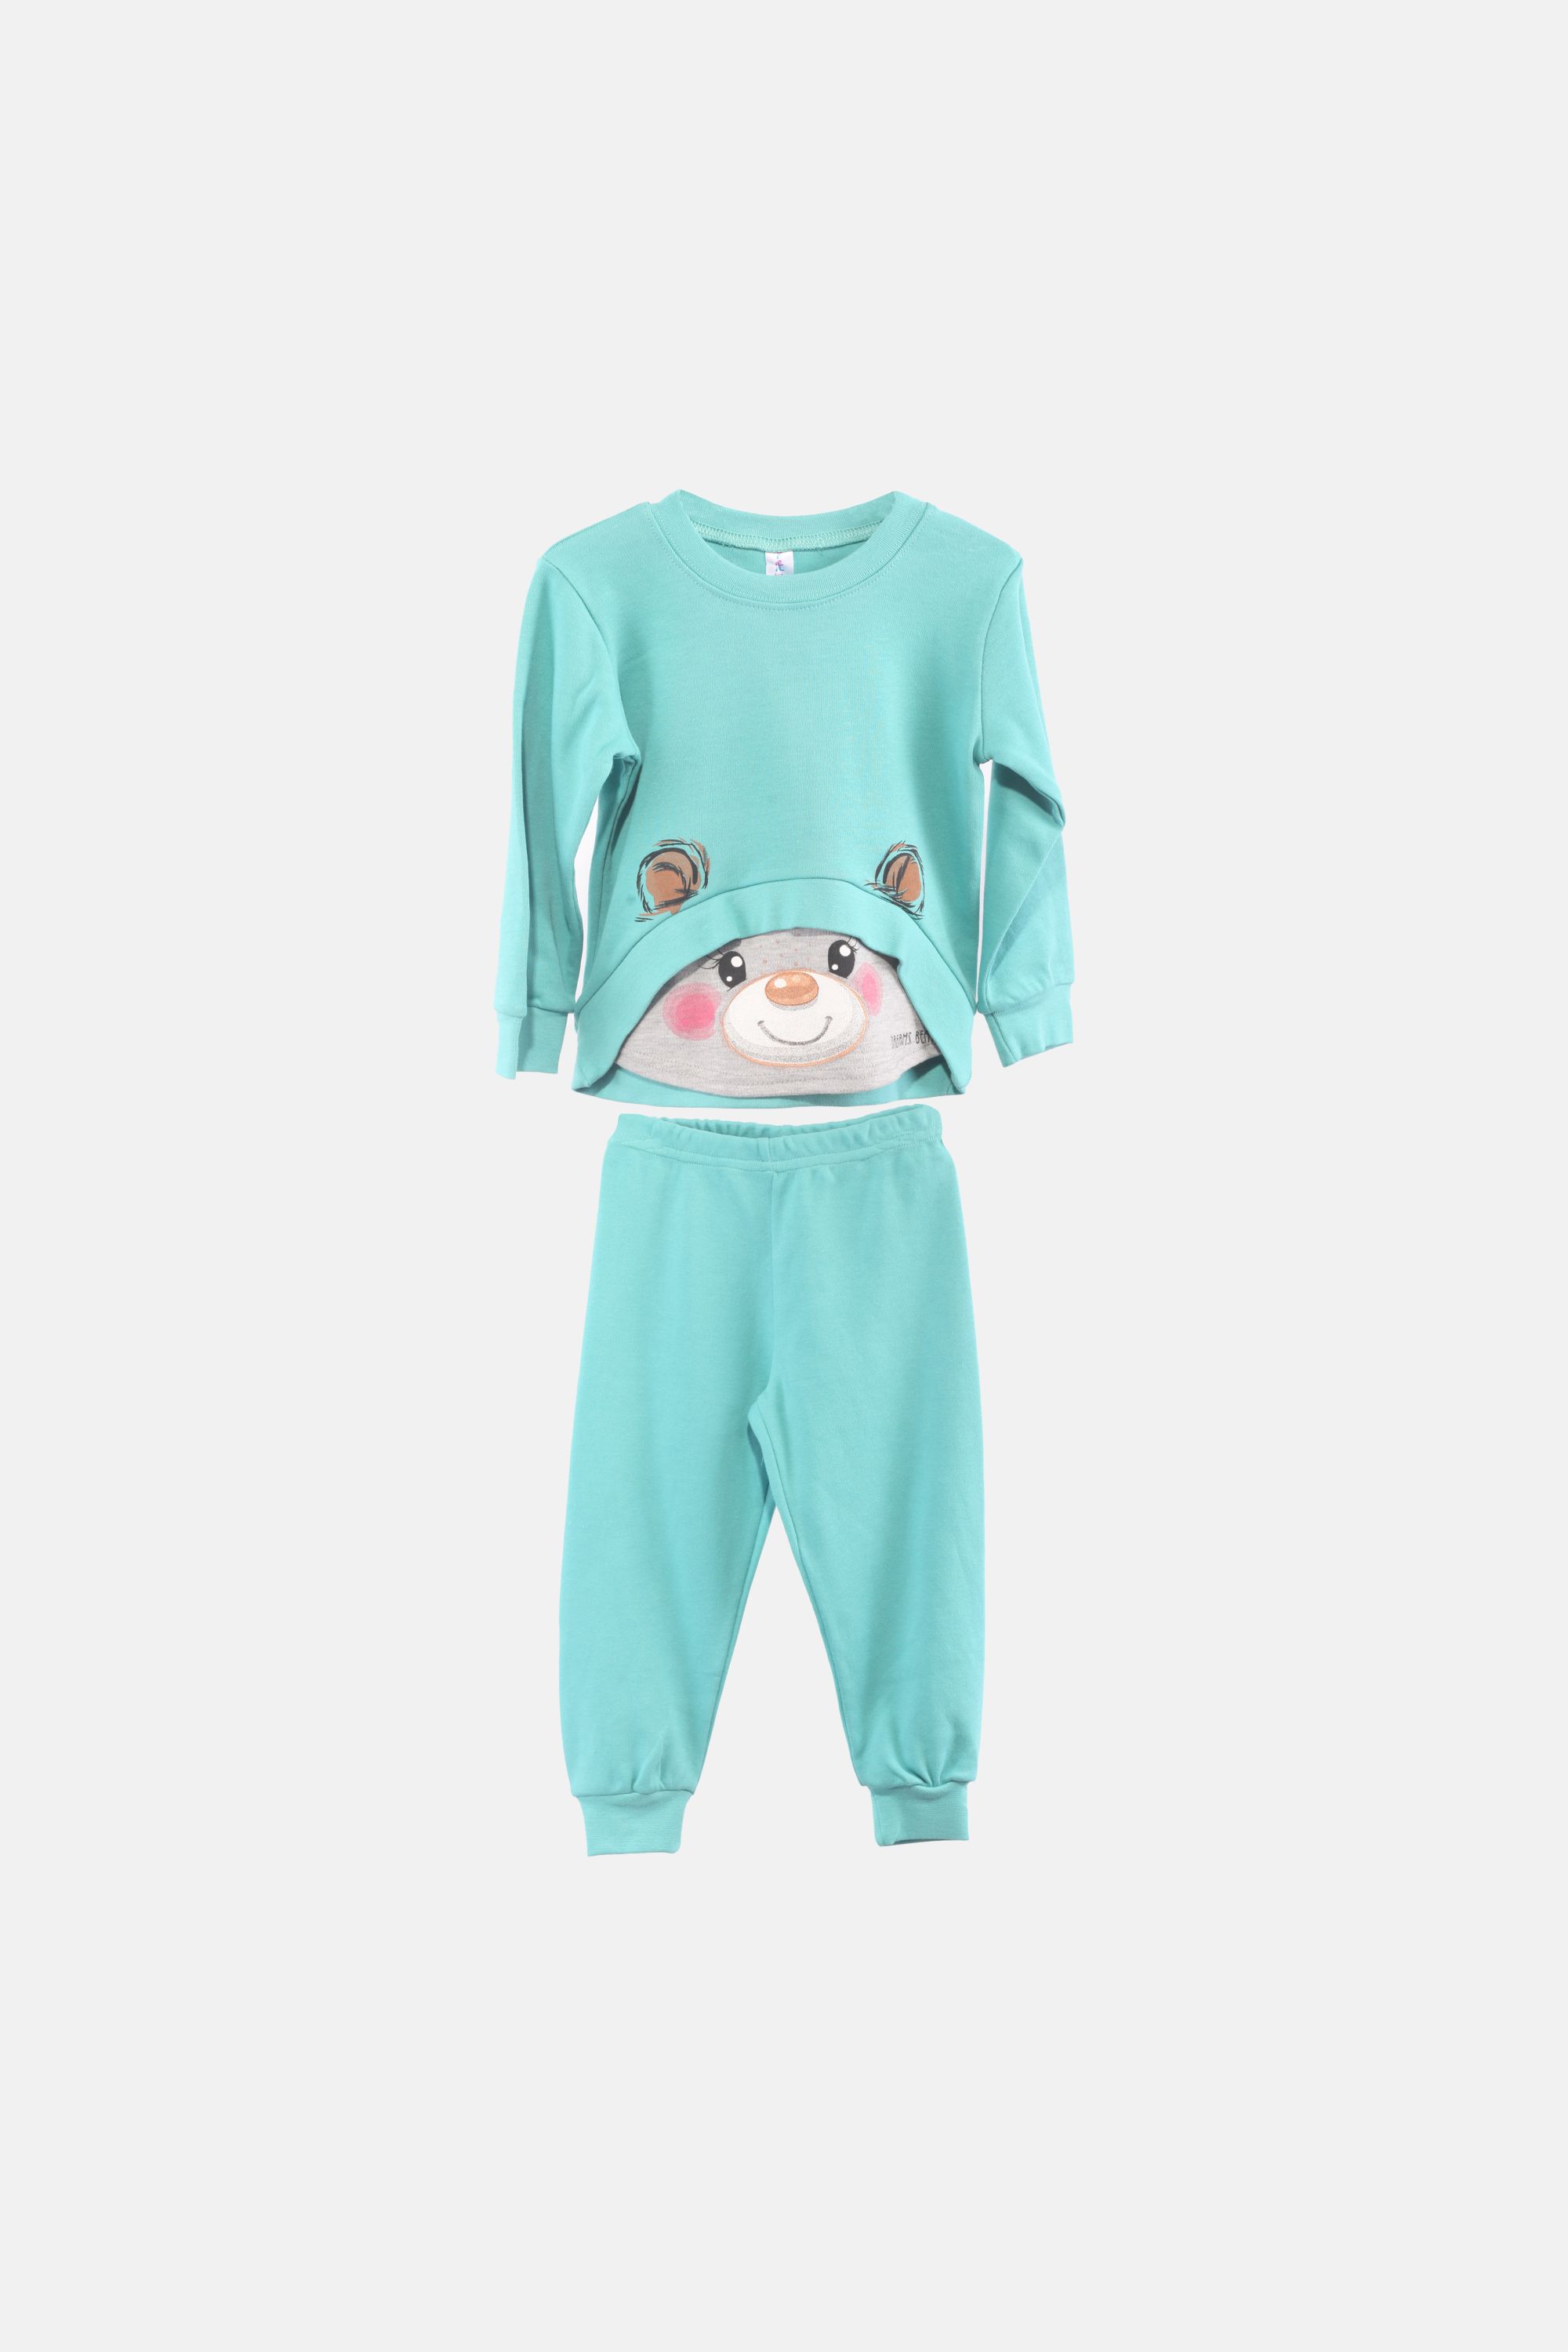 Dívčí bavlněné pyžamo "BEAR SET"/Zelená, růžová Barva: Zelená, Velikost: vel. 1 (78/86 cm)